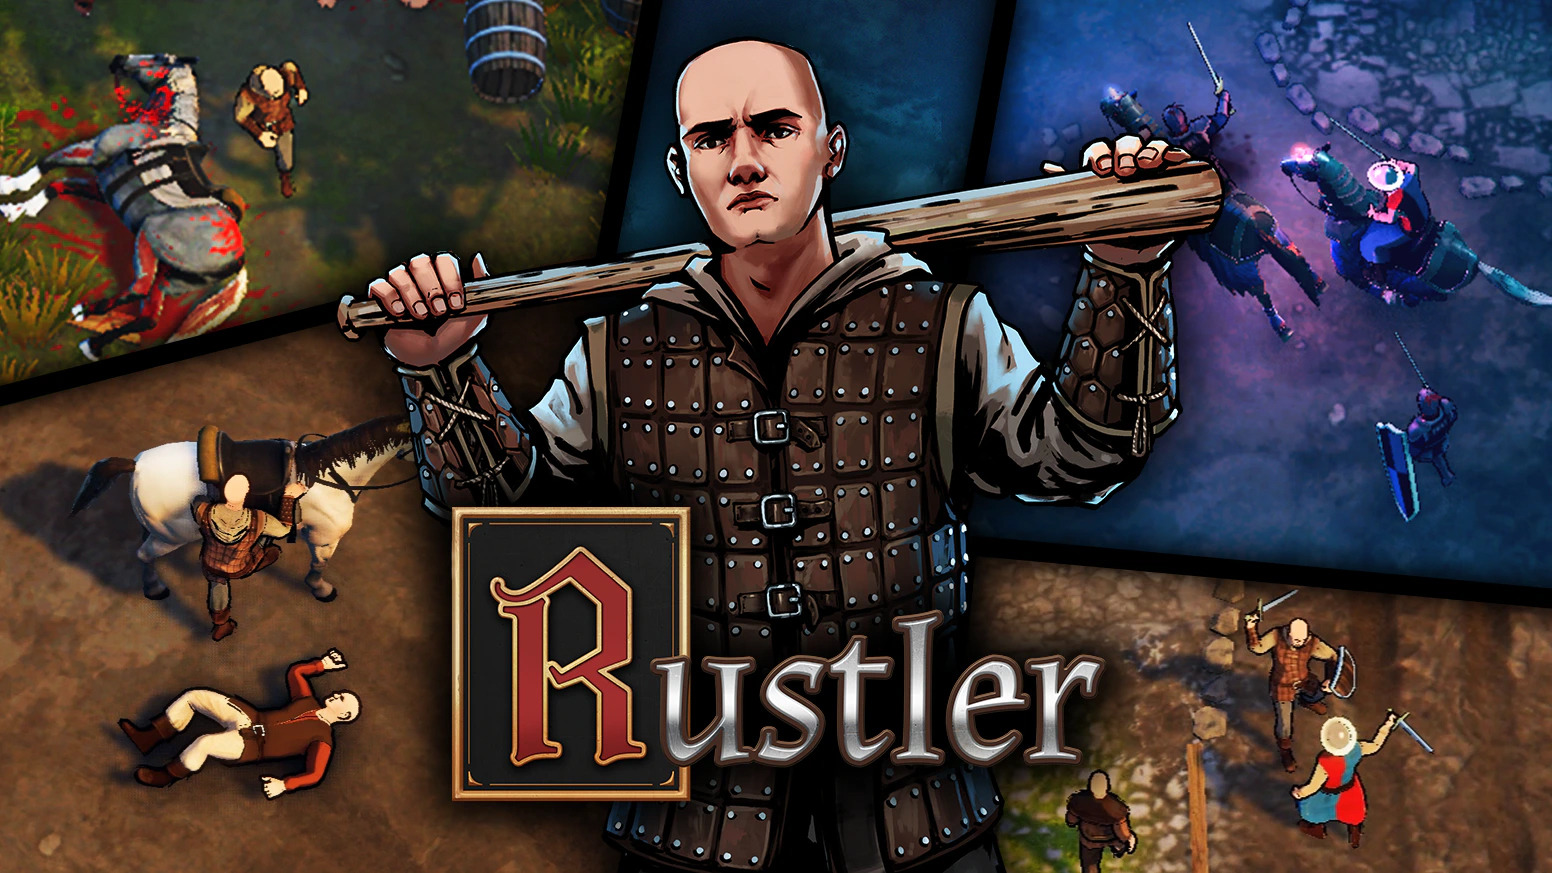 中世版 Gta なオープンワールドact Rustler Steam早期アクセス開始時期が決定 Game Spark 国内 海外ゲーム 情報サイト